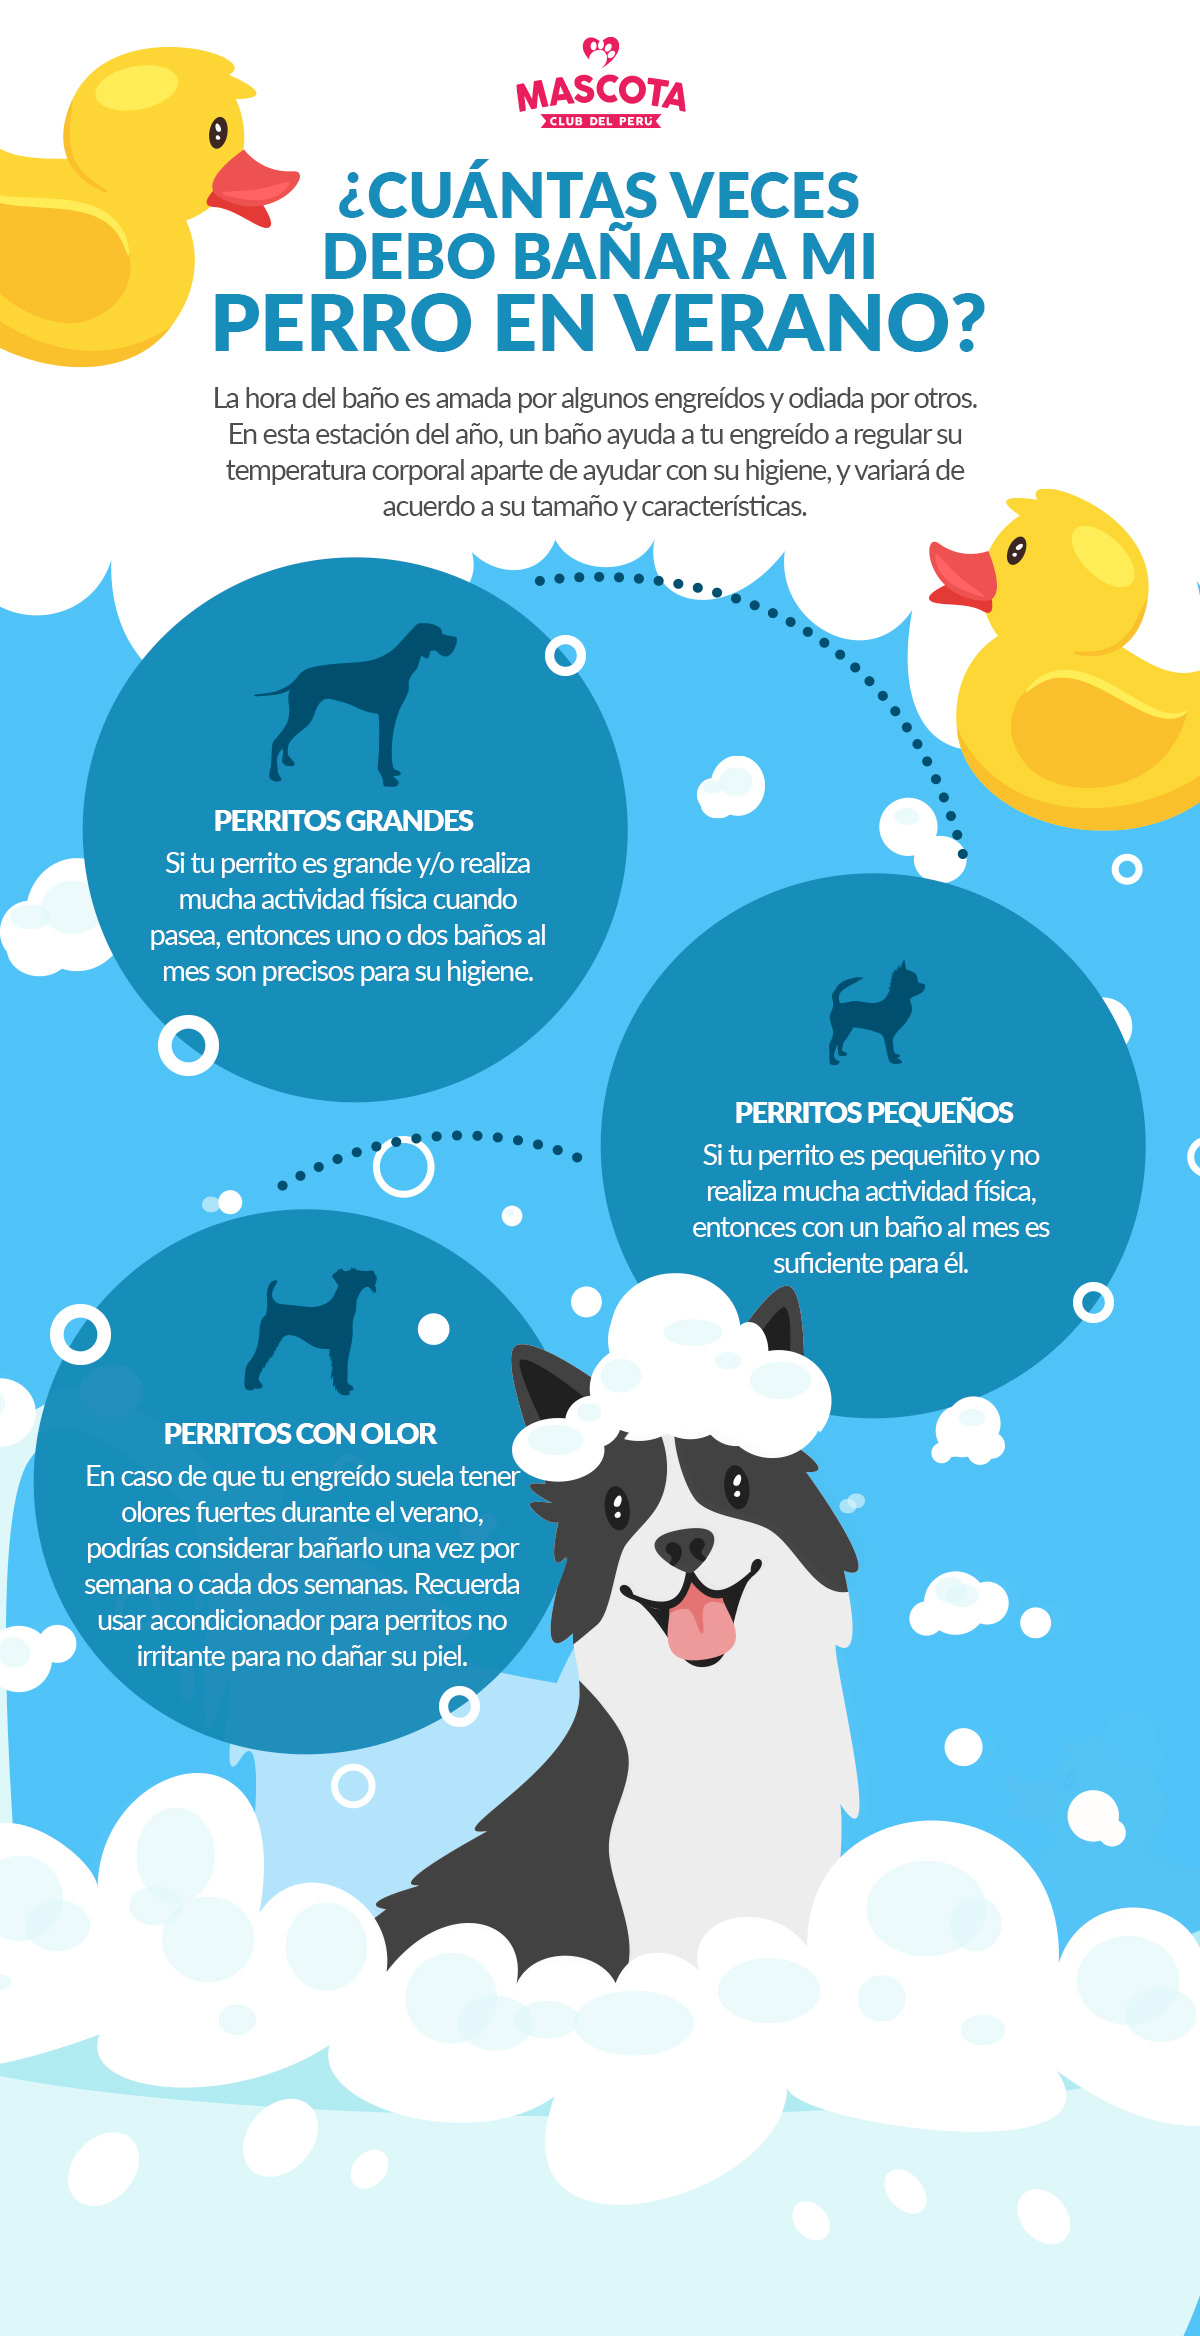 Térmico trolebús Drástico Cuántas veces debo bañar a mi perro en verano? - Mascota Club del Perú